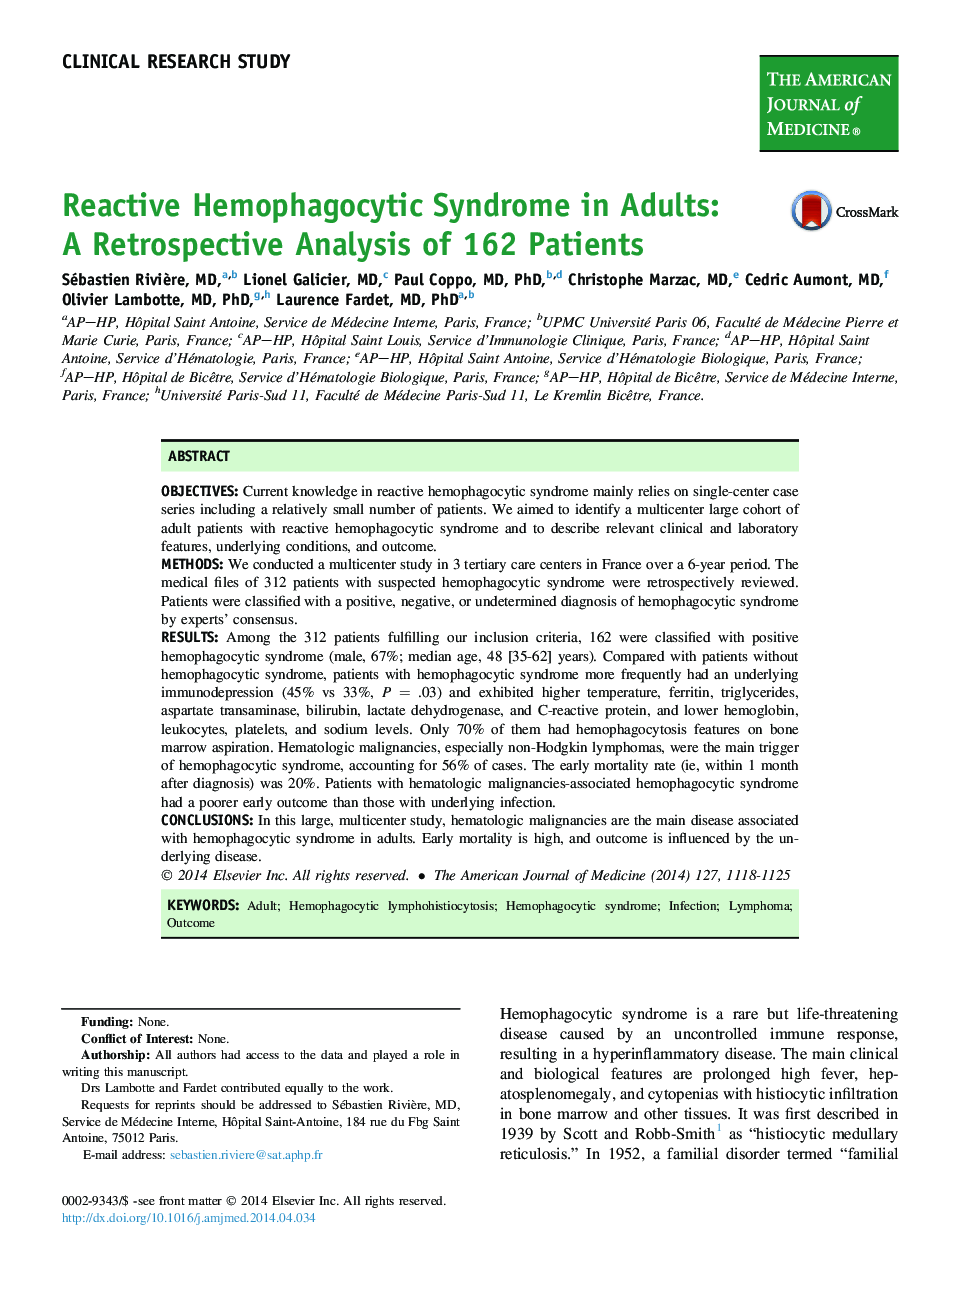 تحقیق بالینی سندرم هموفیوپلاستی فعال در بزرگسالان: یک بررسی گذشتهنگر از 162 بیمار 